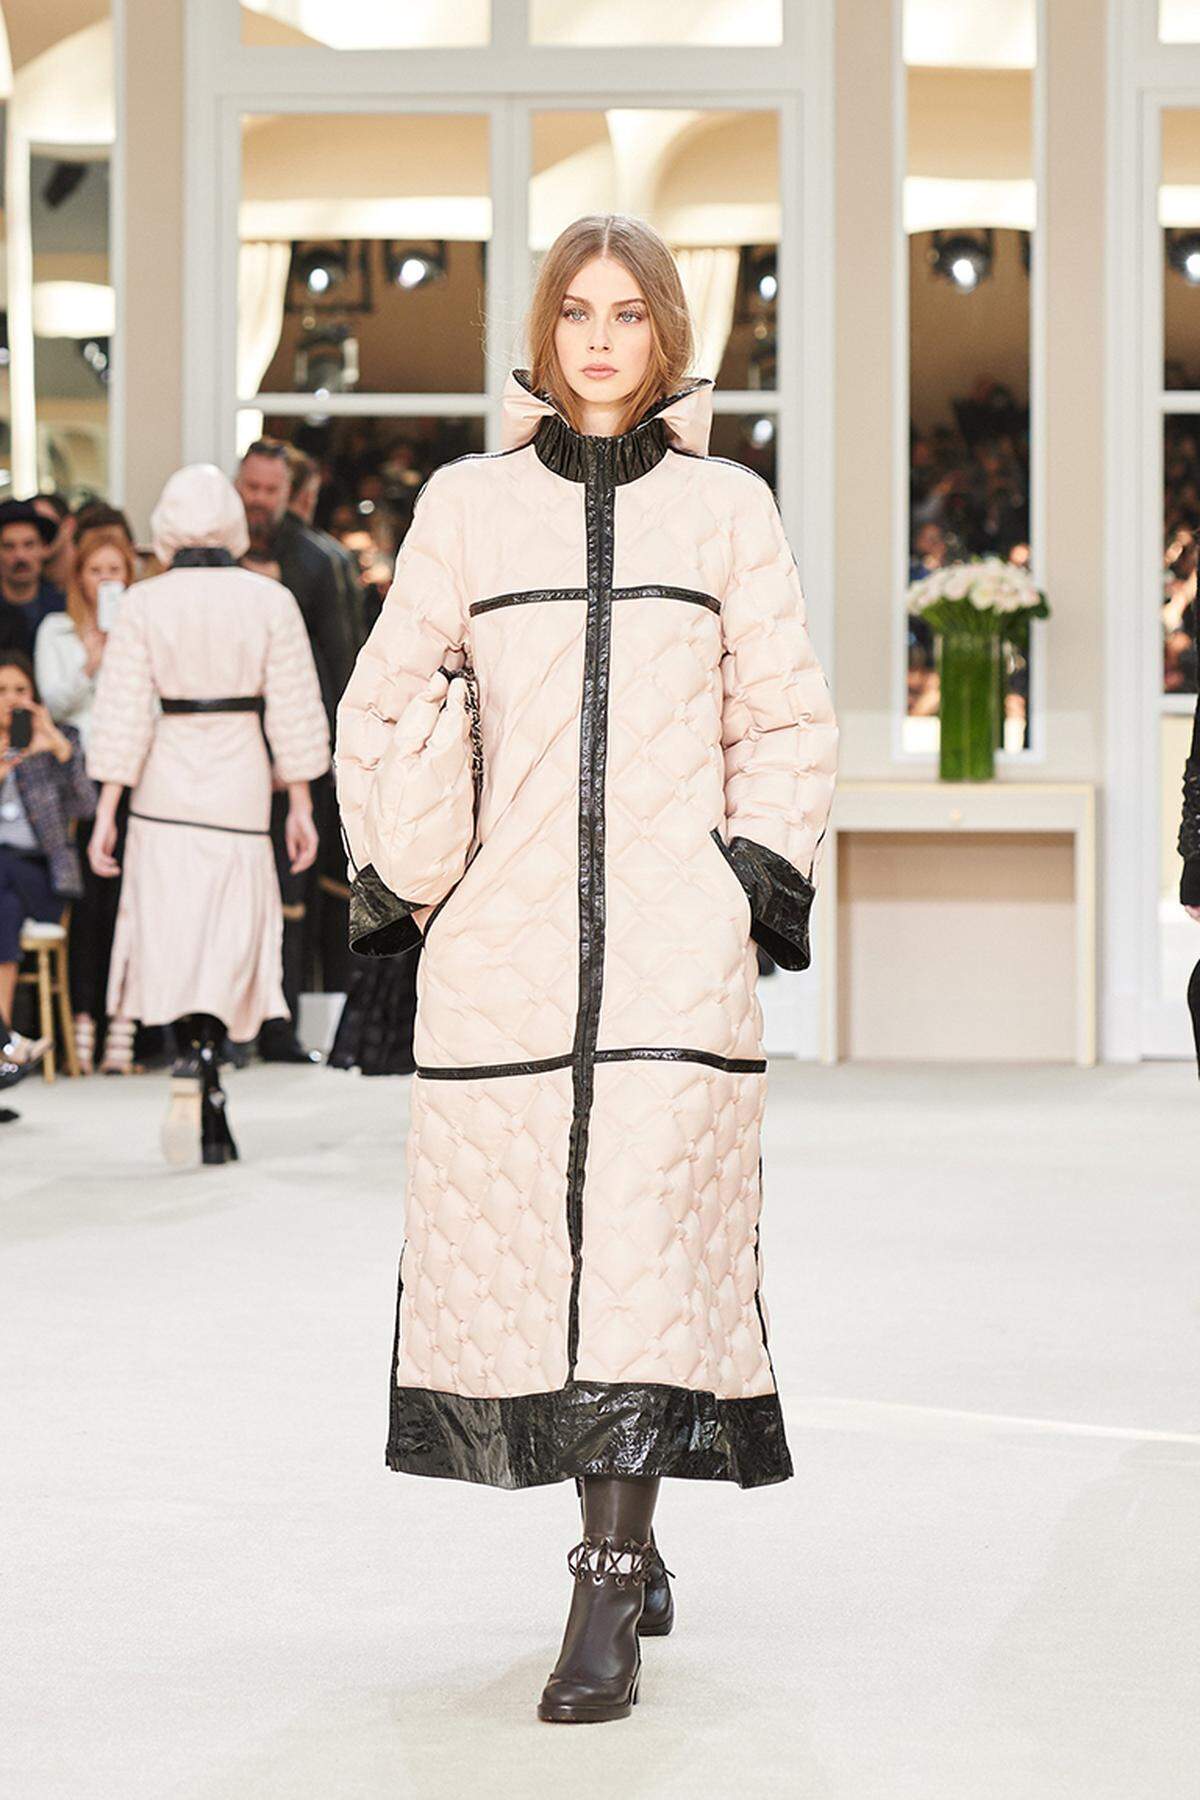 Eine Kombination aus Zartrosa und Lackschwarz - so sieht Karl Lagerfeld für Chanel den idealen Daunenmantel.